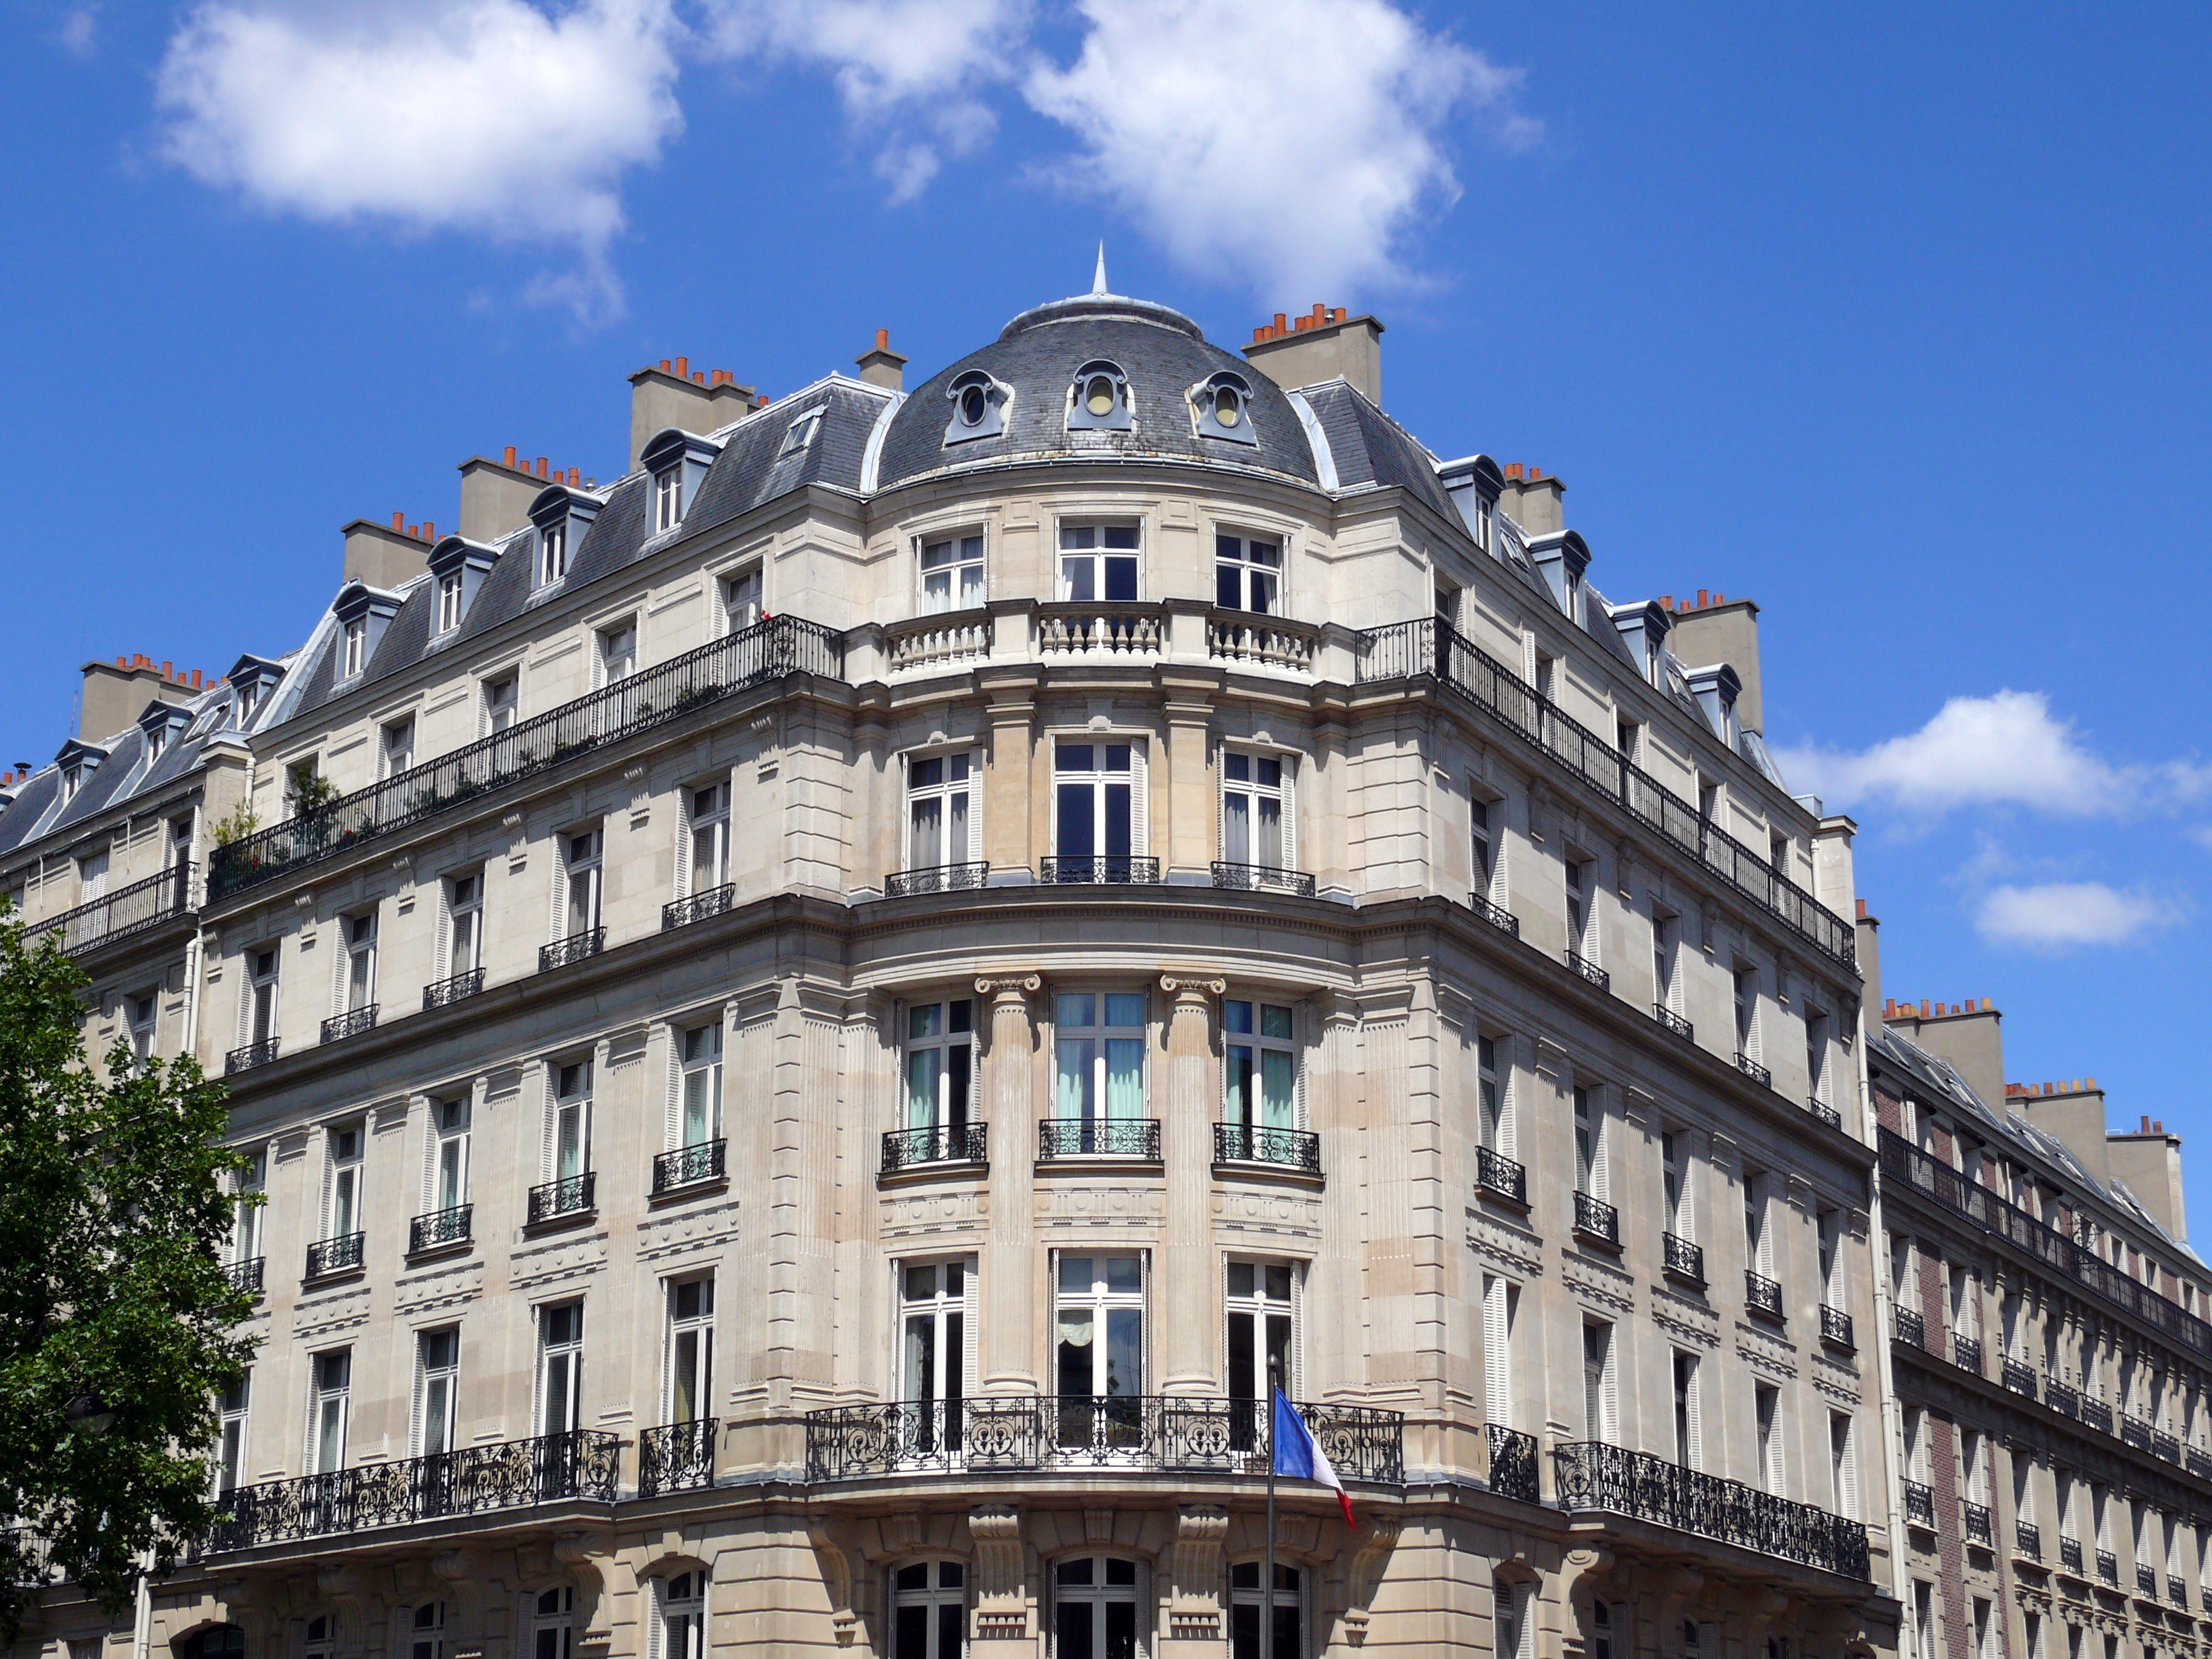 Immeuble au coin arondi avec colonnes, Paris